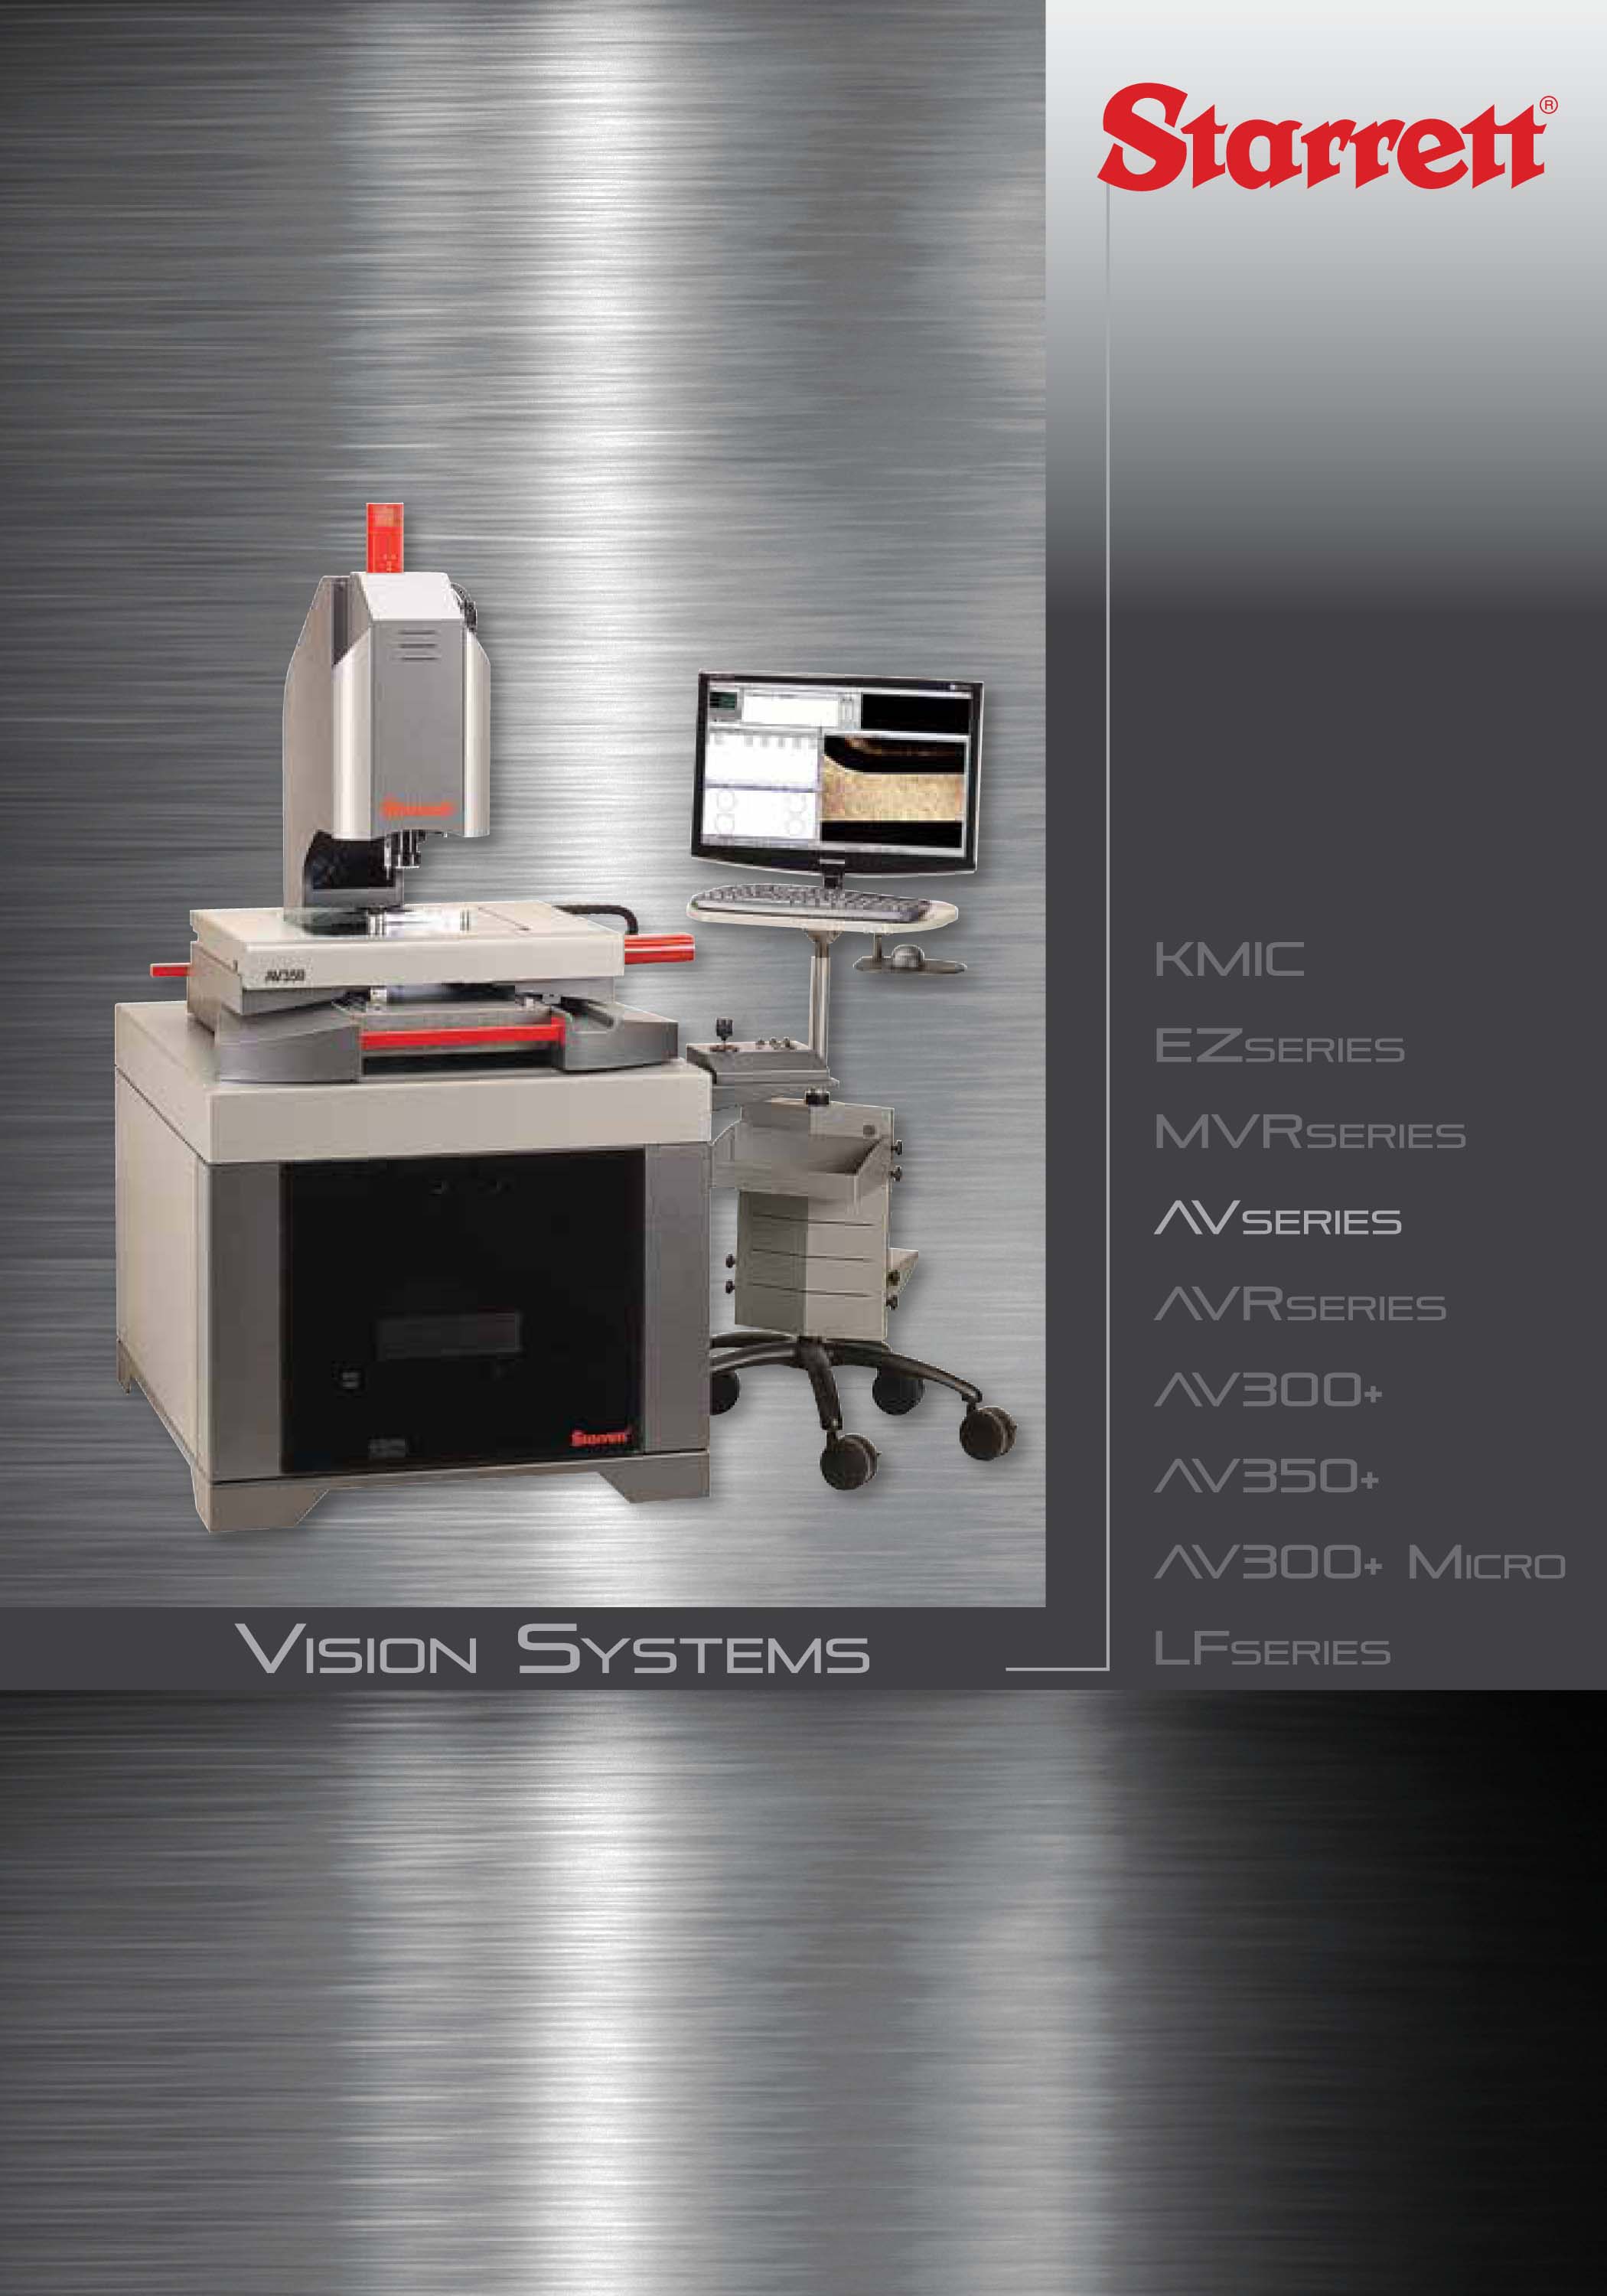 Starrett - Vision Systems